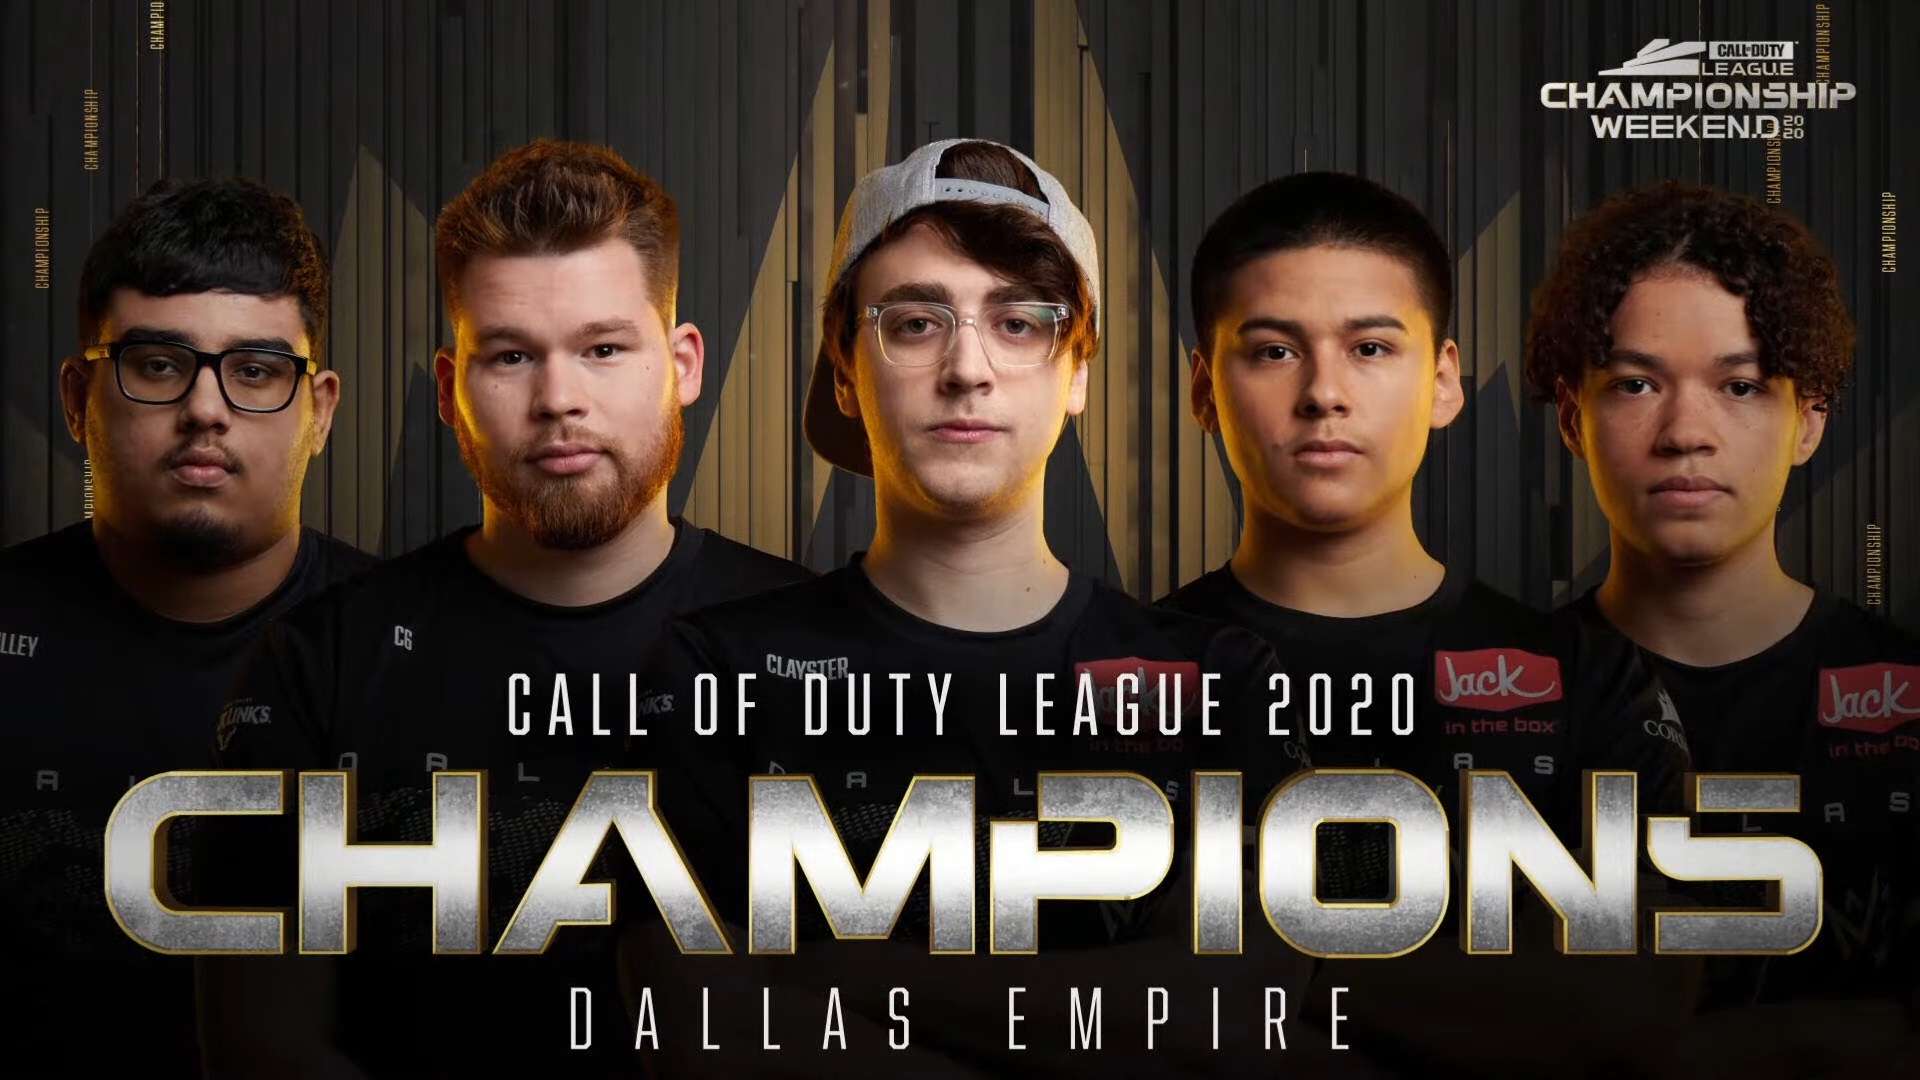 Dallas Empire winning Champs